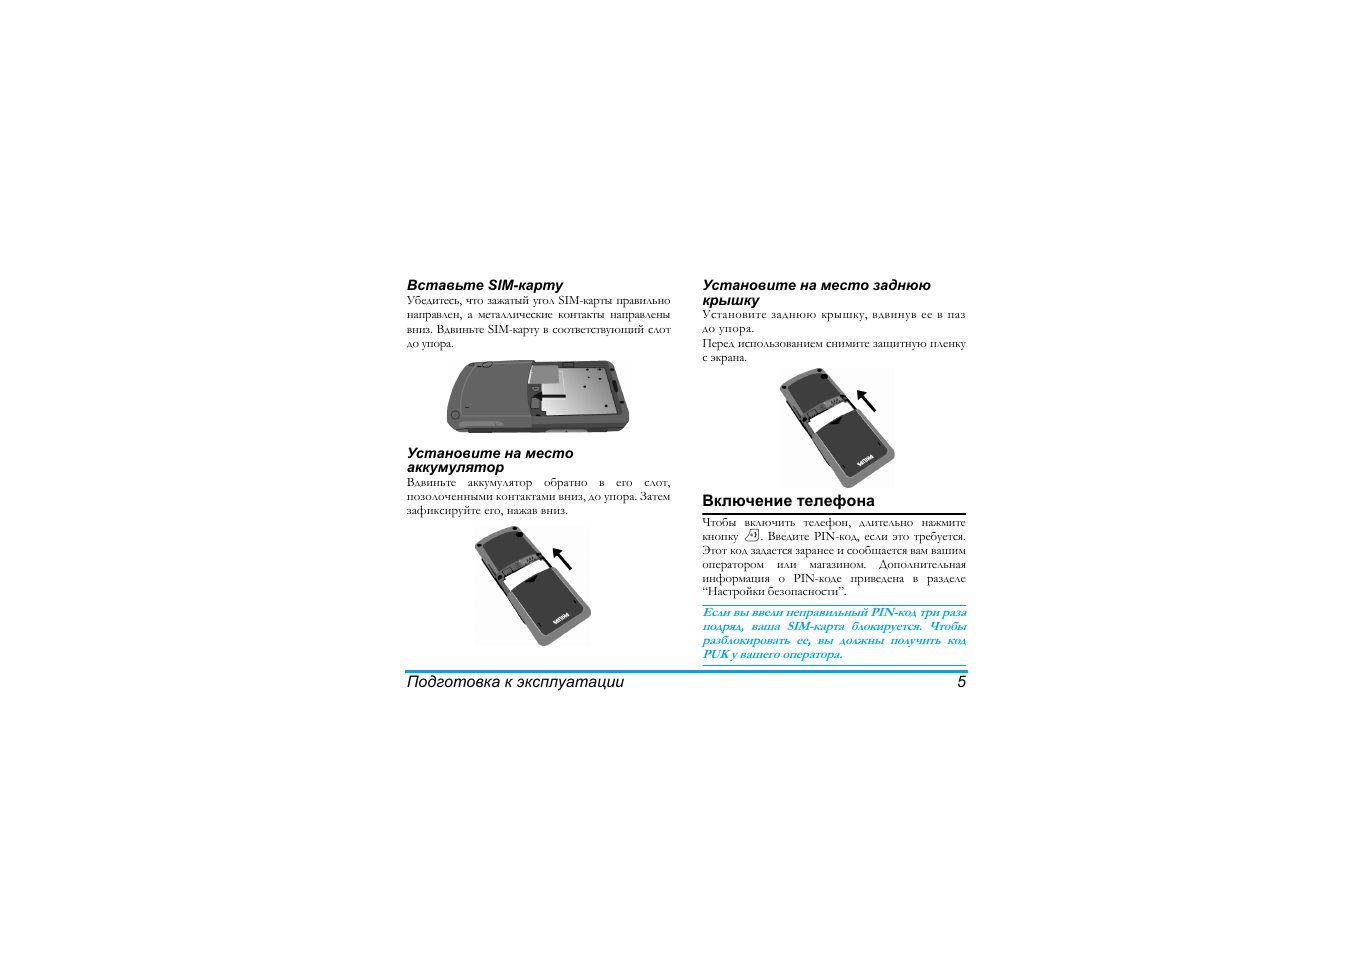 Мобильник кнопочный Philips Xenium инструкция. Как включить кнопочный телефон Филипс. Филипс кнопочный выключить фонарик. Philips Xenium 580 инструкция. Филипс кнопочный инструкция